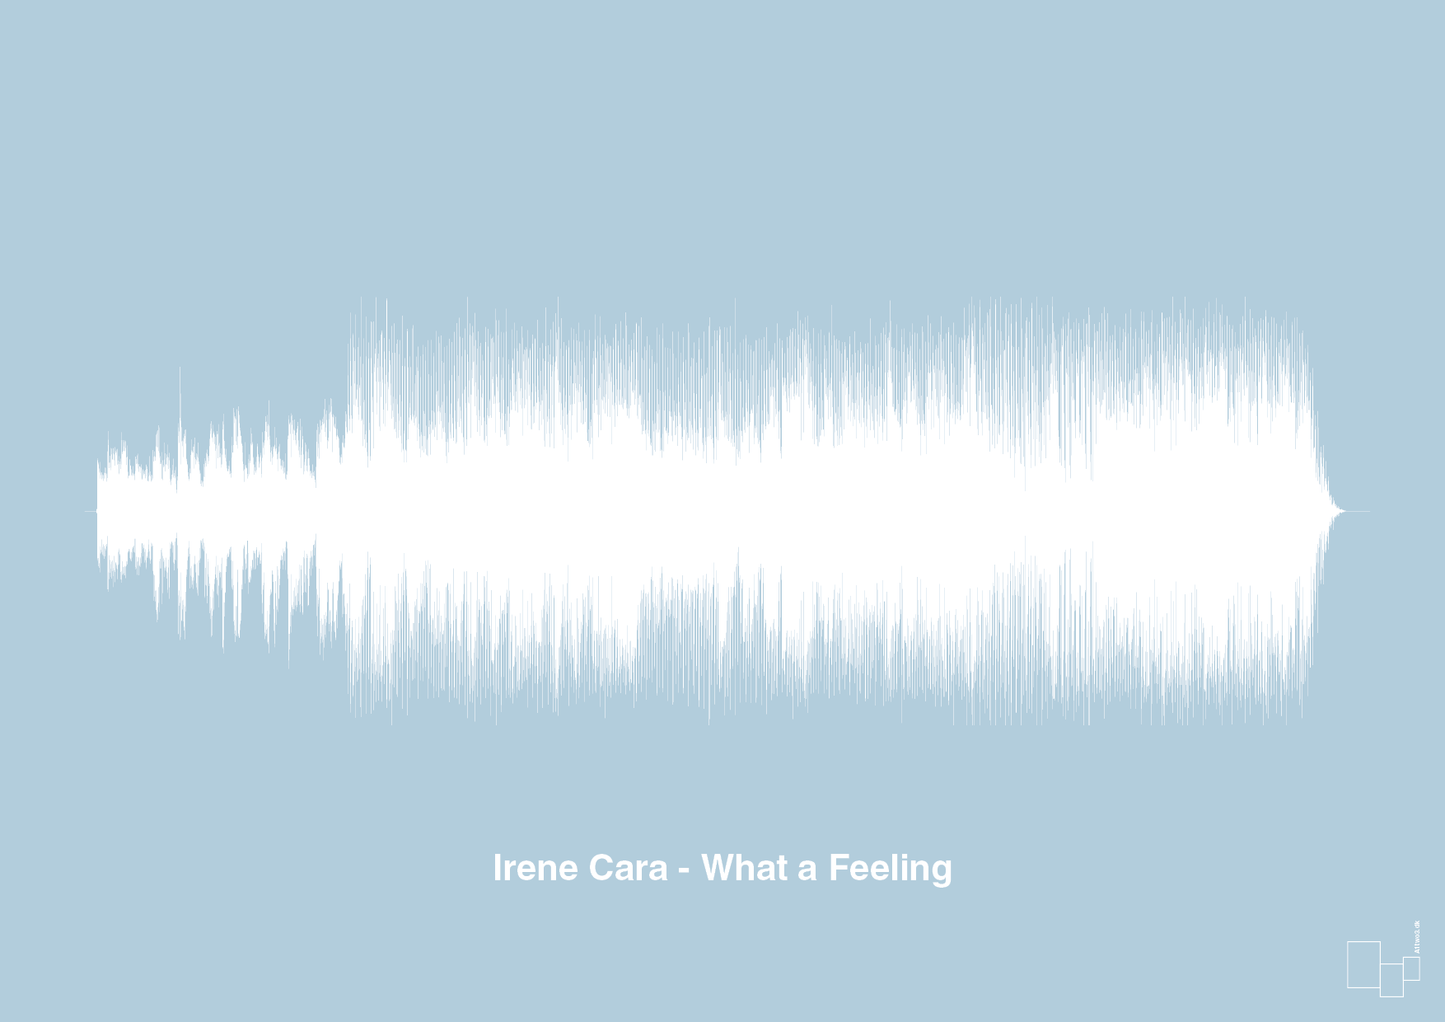 irene cara - what a feeling - Plakat med Musik i Heavenly Blue